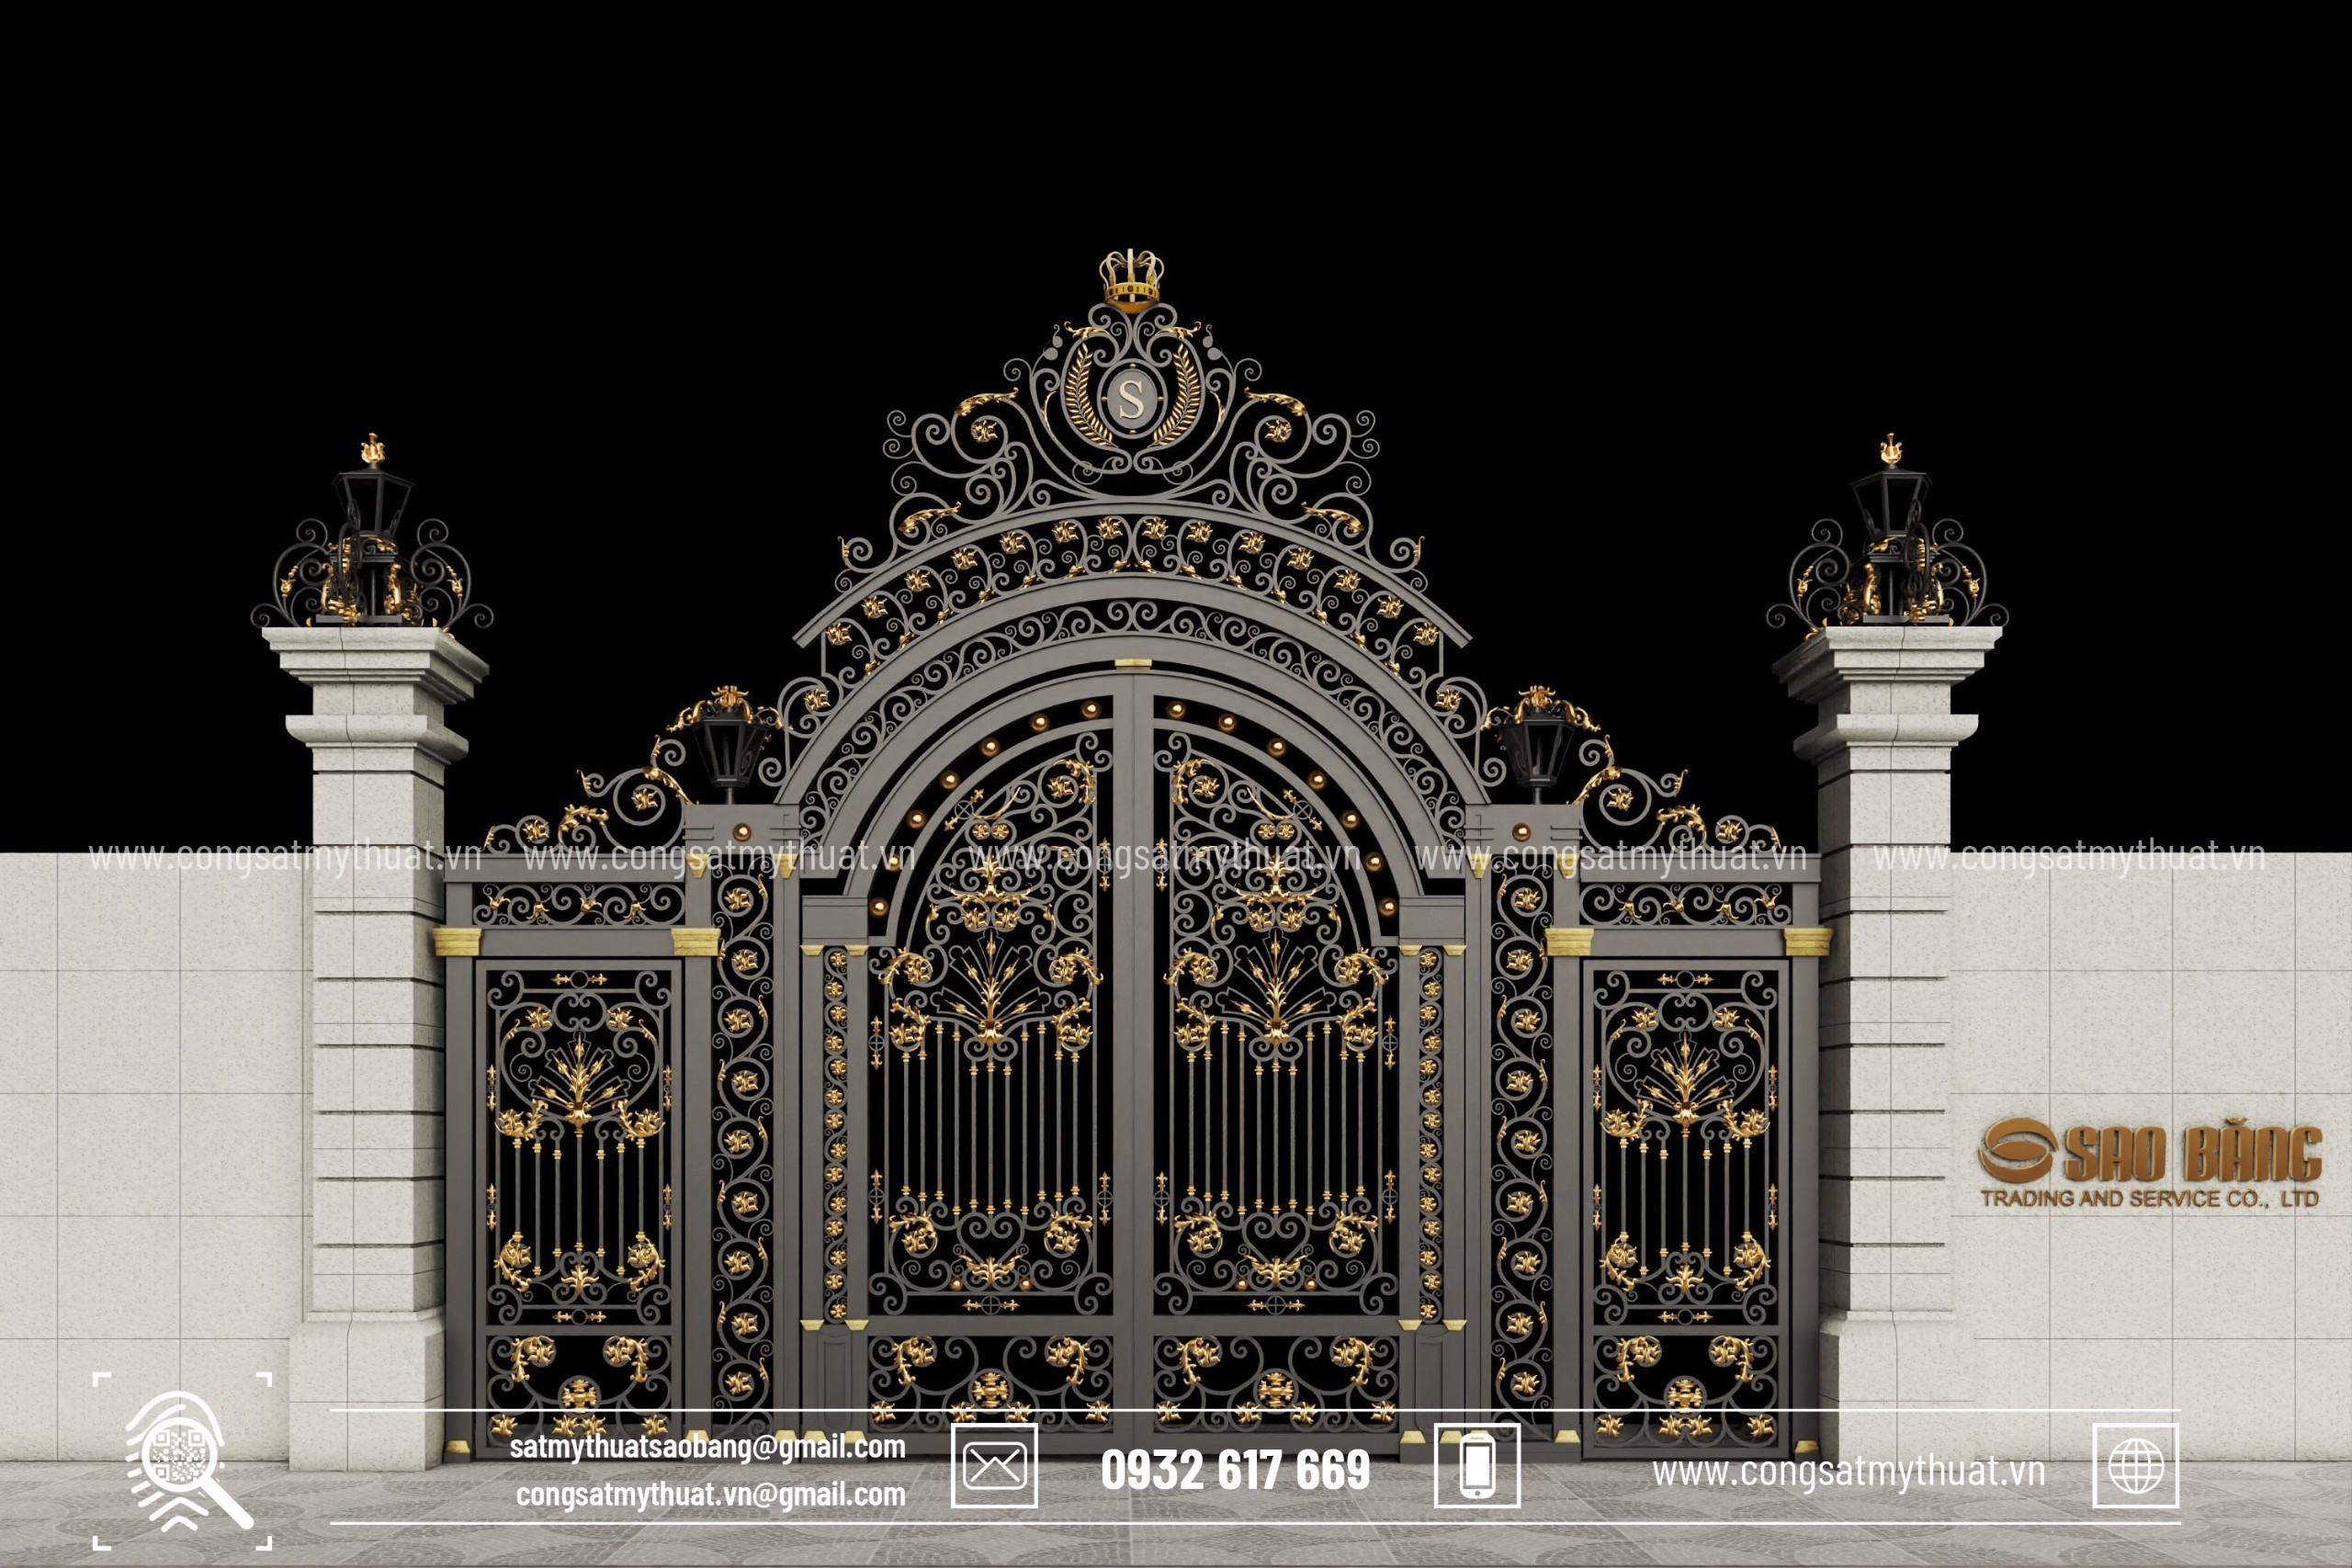 Mẫu cổng biệt thự đẹp, cổng biệt thự hiện đại, cửa cổng sắt biệt thự